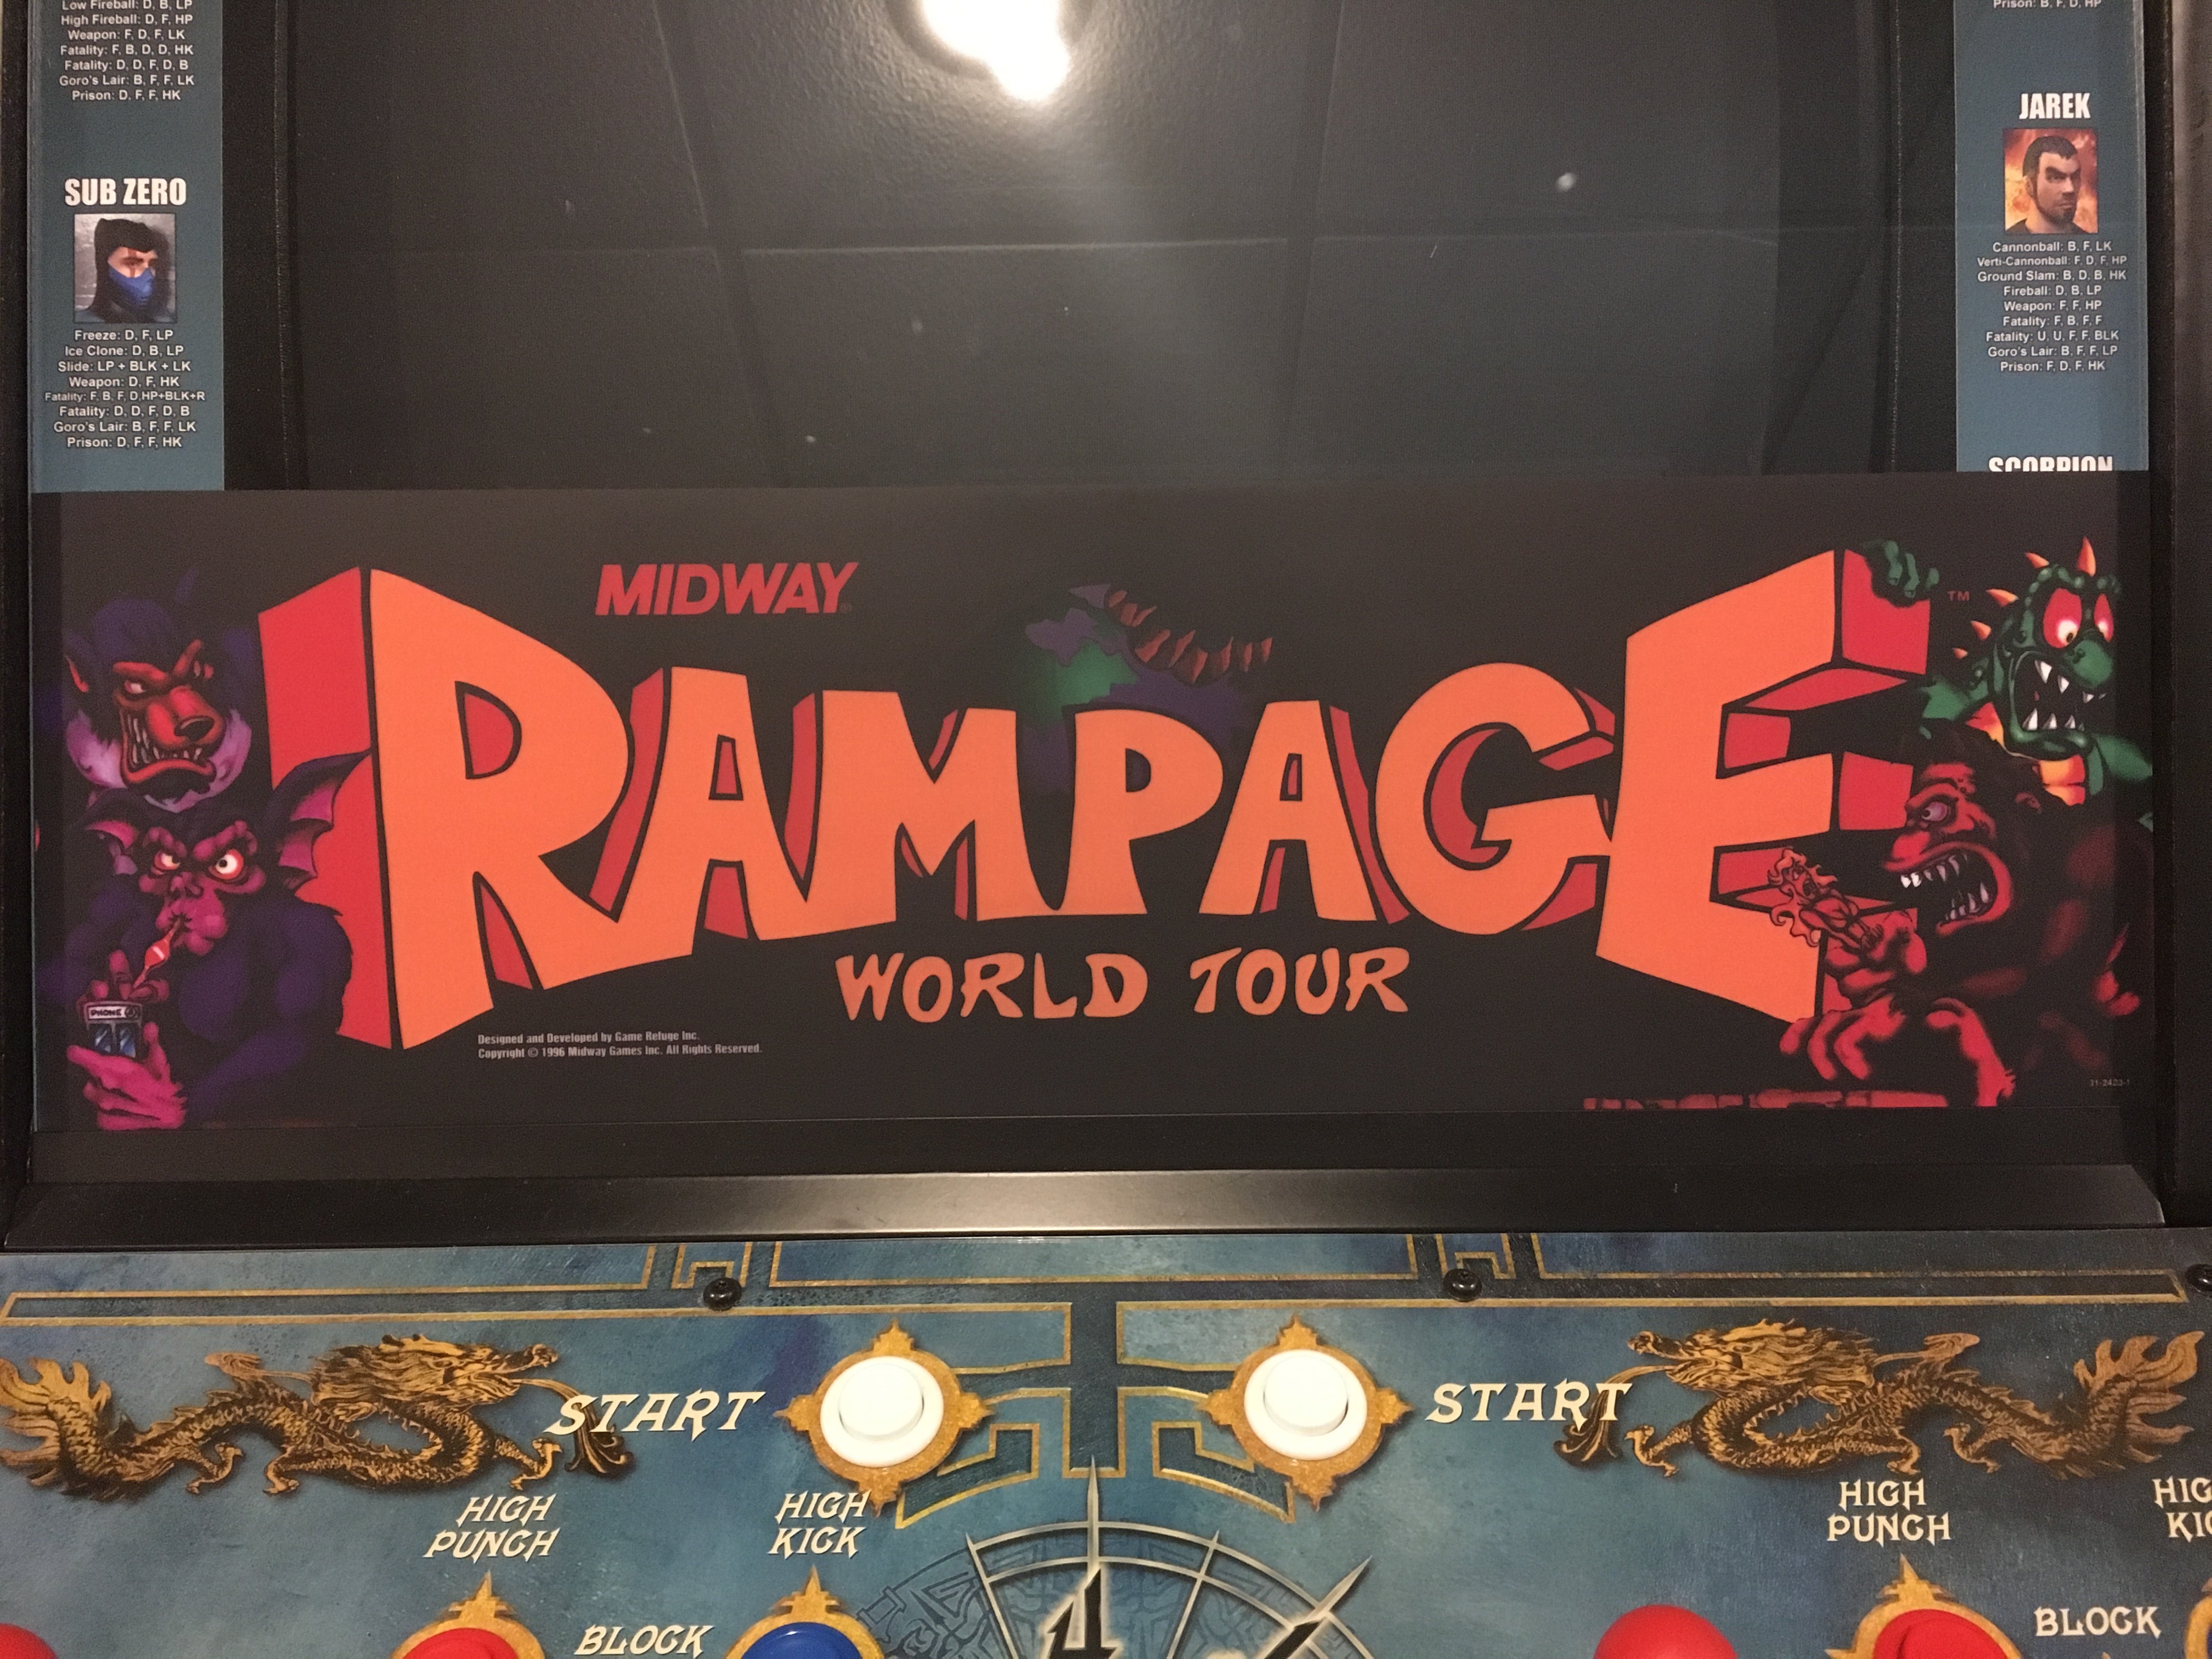 Carpa del Rampage World Tour